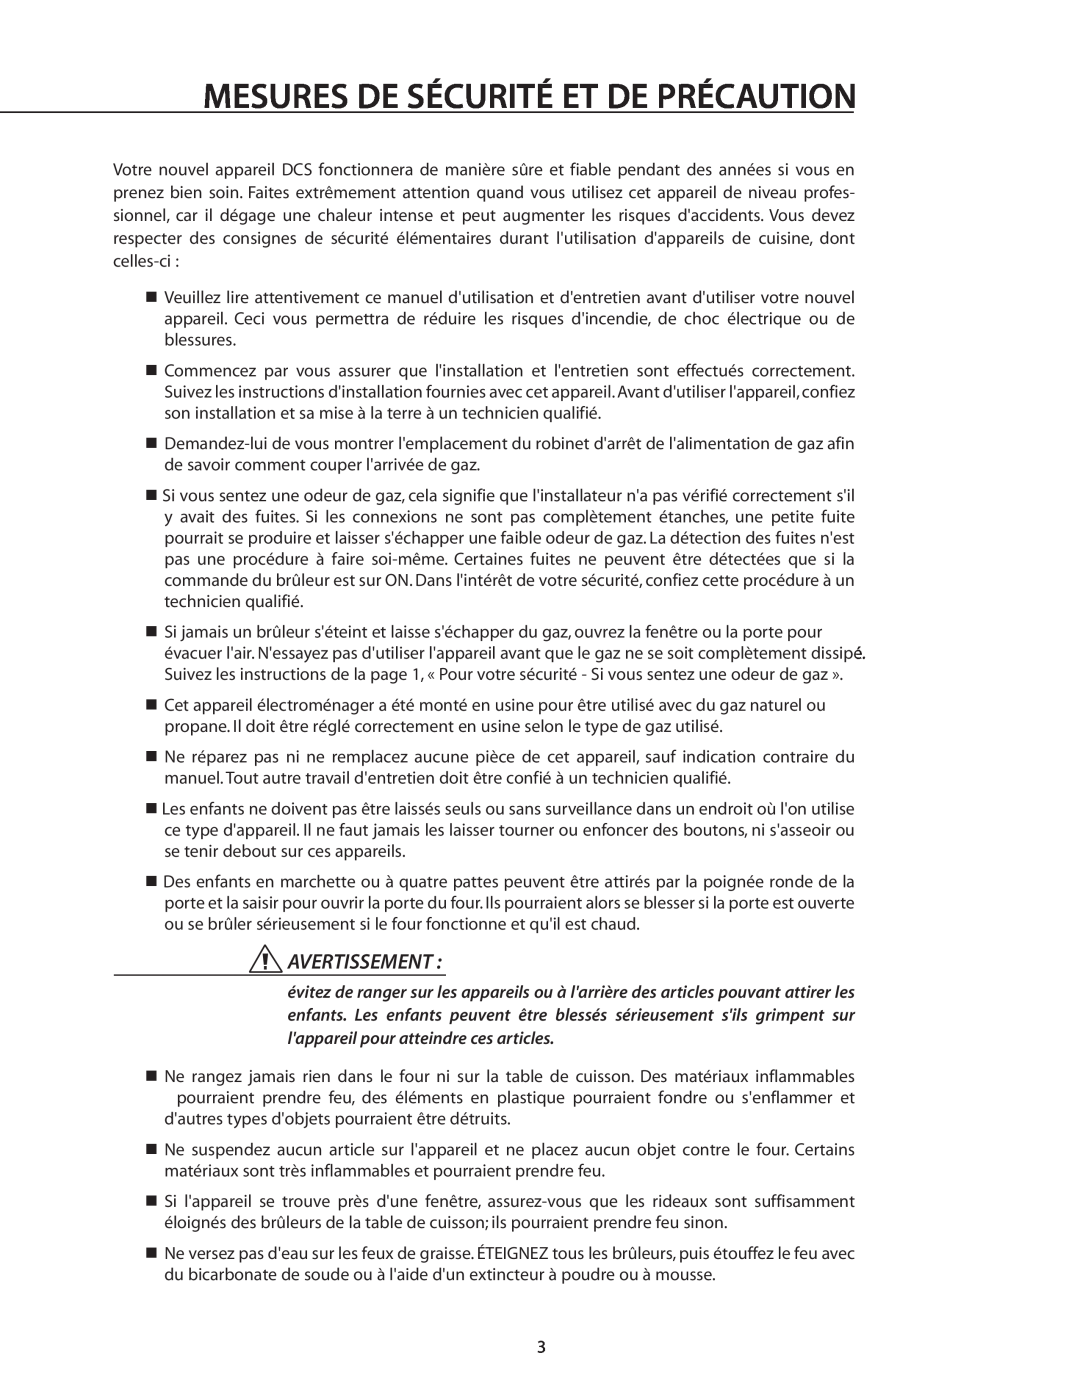 DCS RDS-305 manual Mesures De Sécurité Et De Précaution, Avertissement 